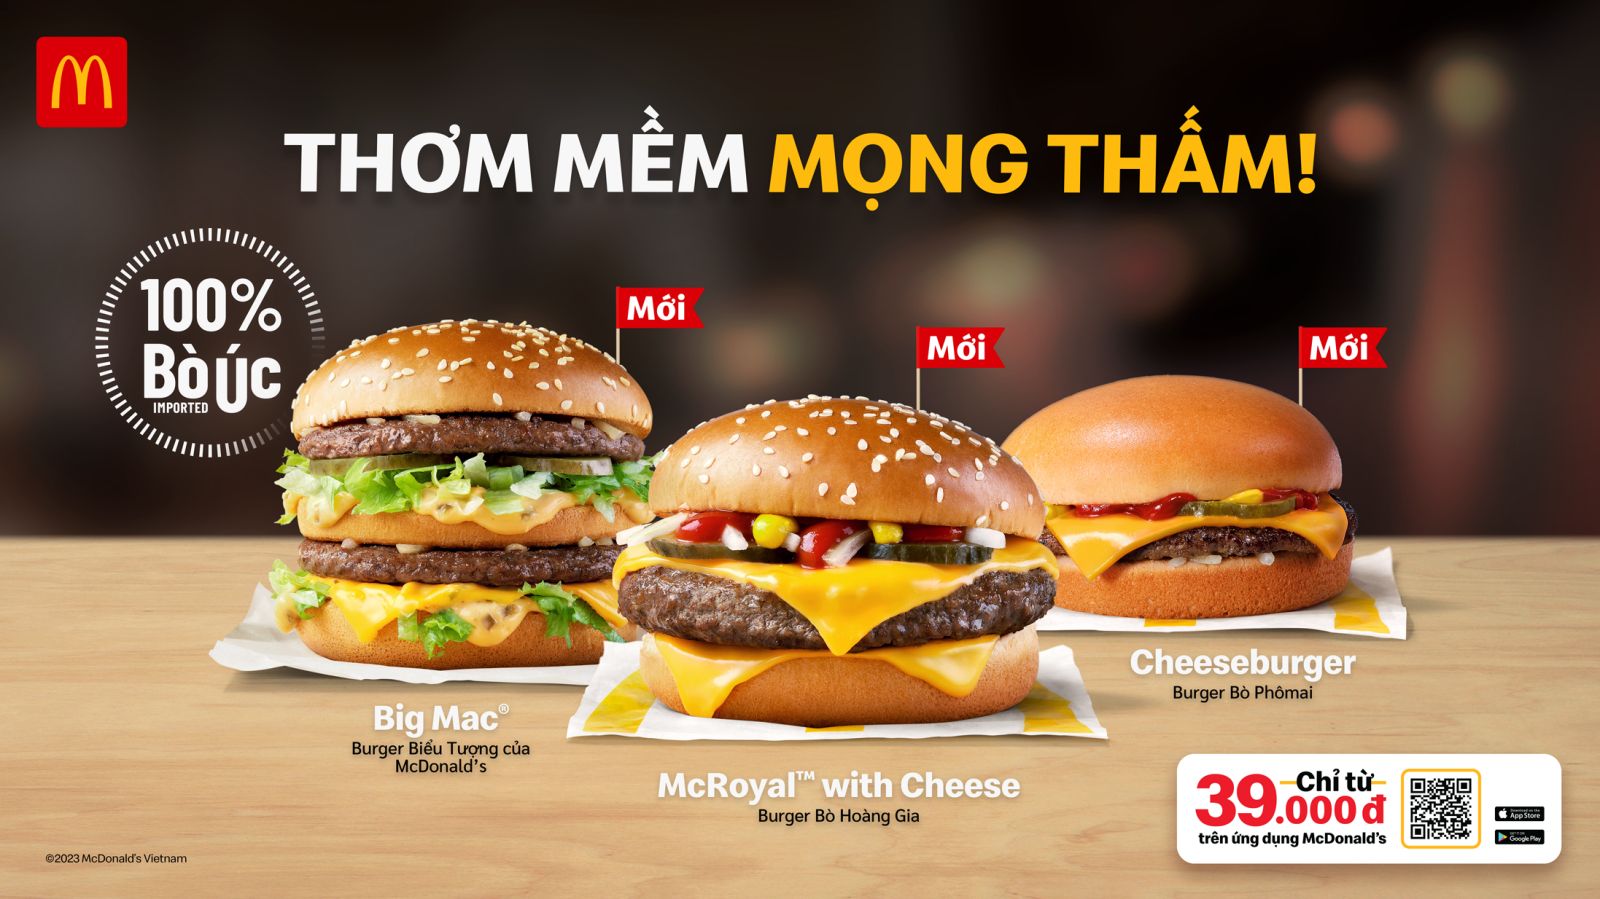 McDonald’s Việt Nam trình làng các sản phẩm bánh Burger mới